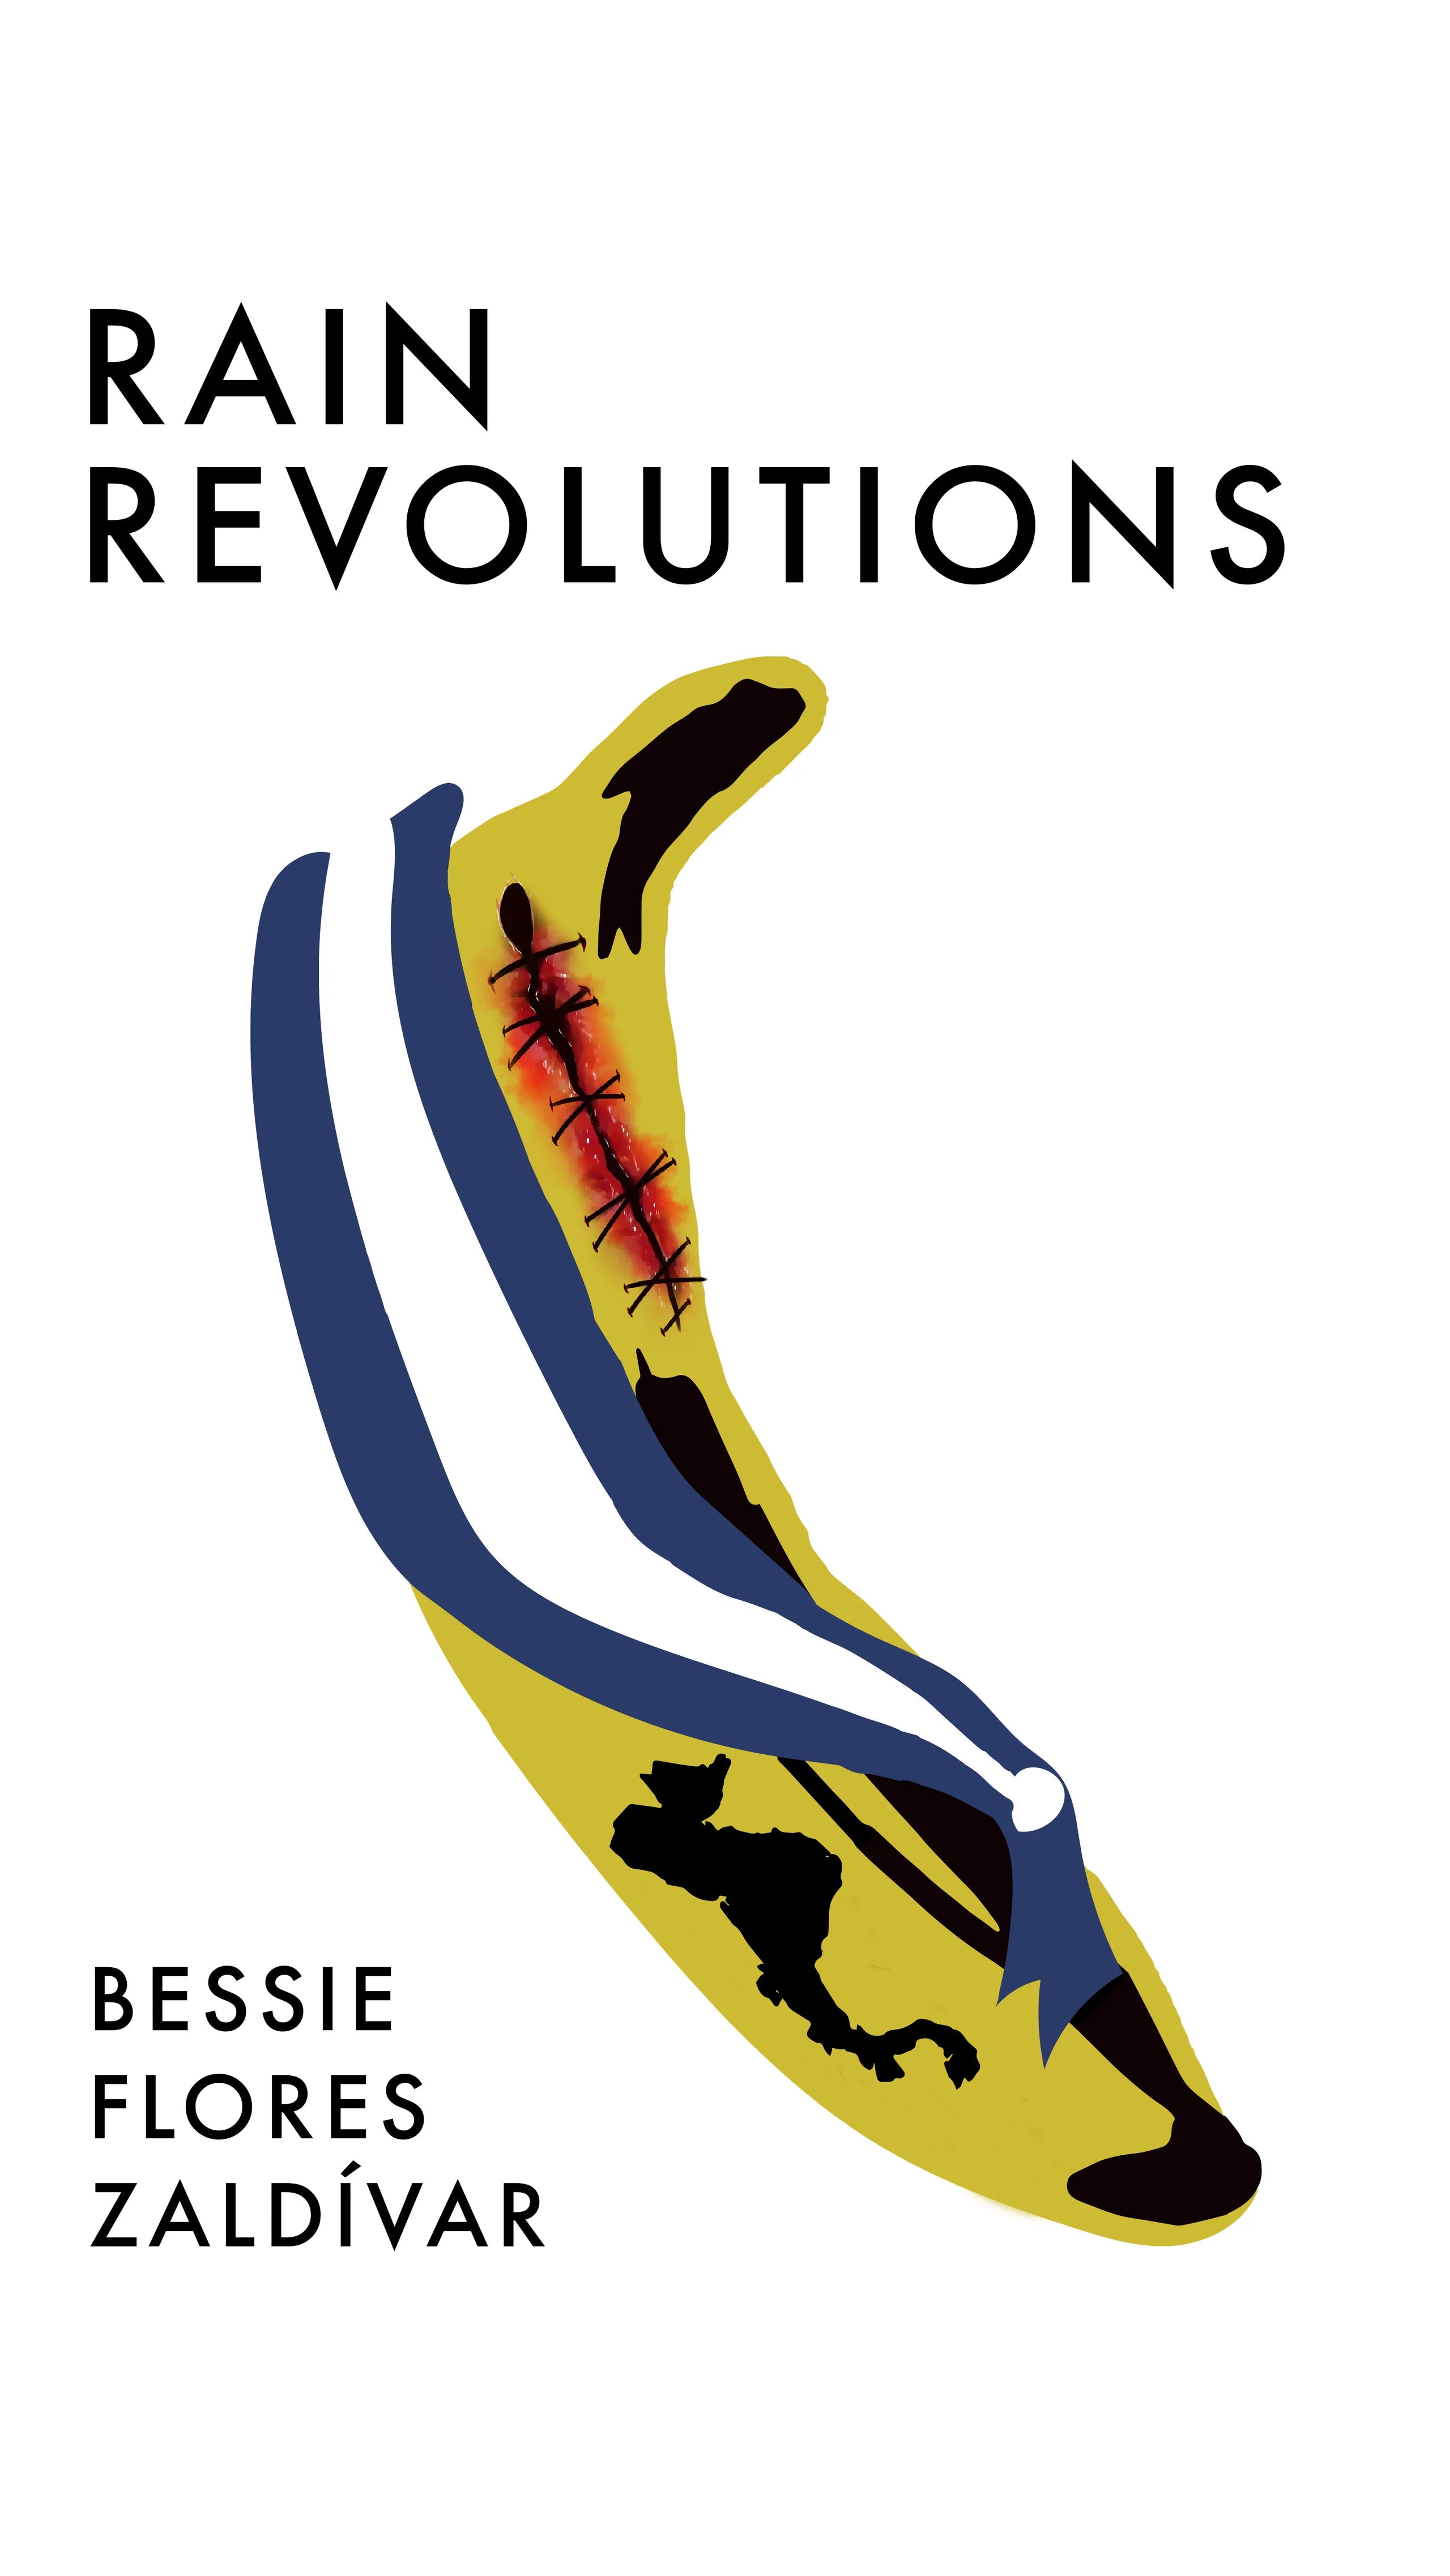 Rain Revolutions - Bessie Flores Zalvidir